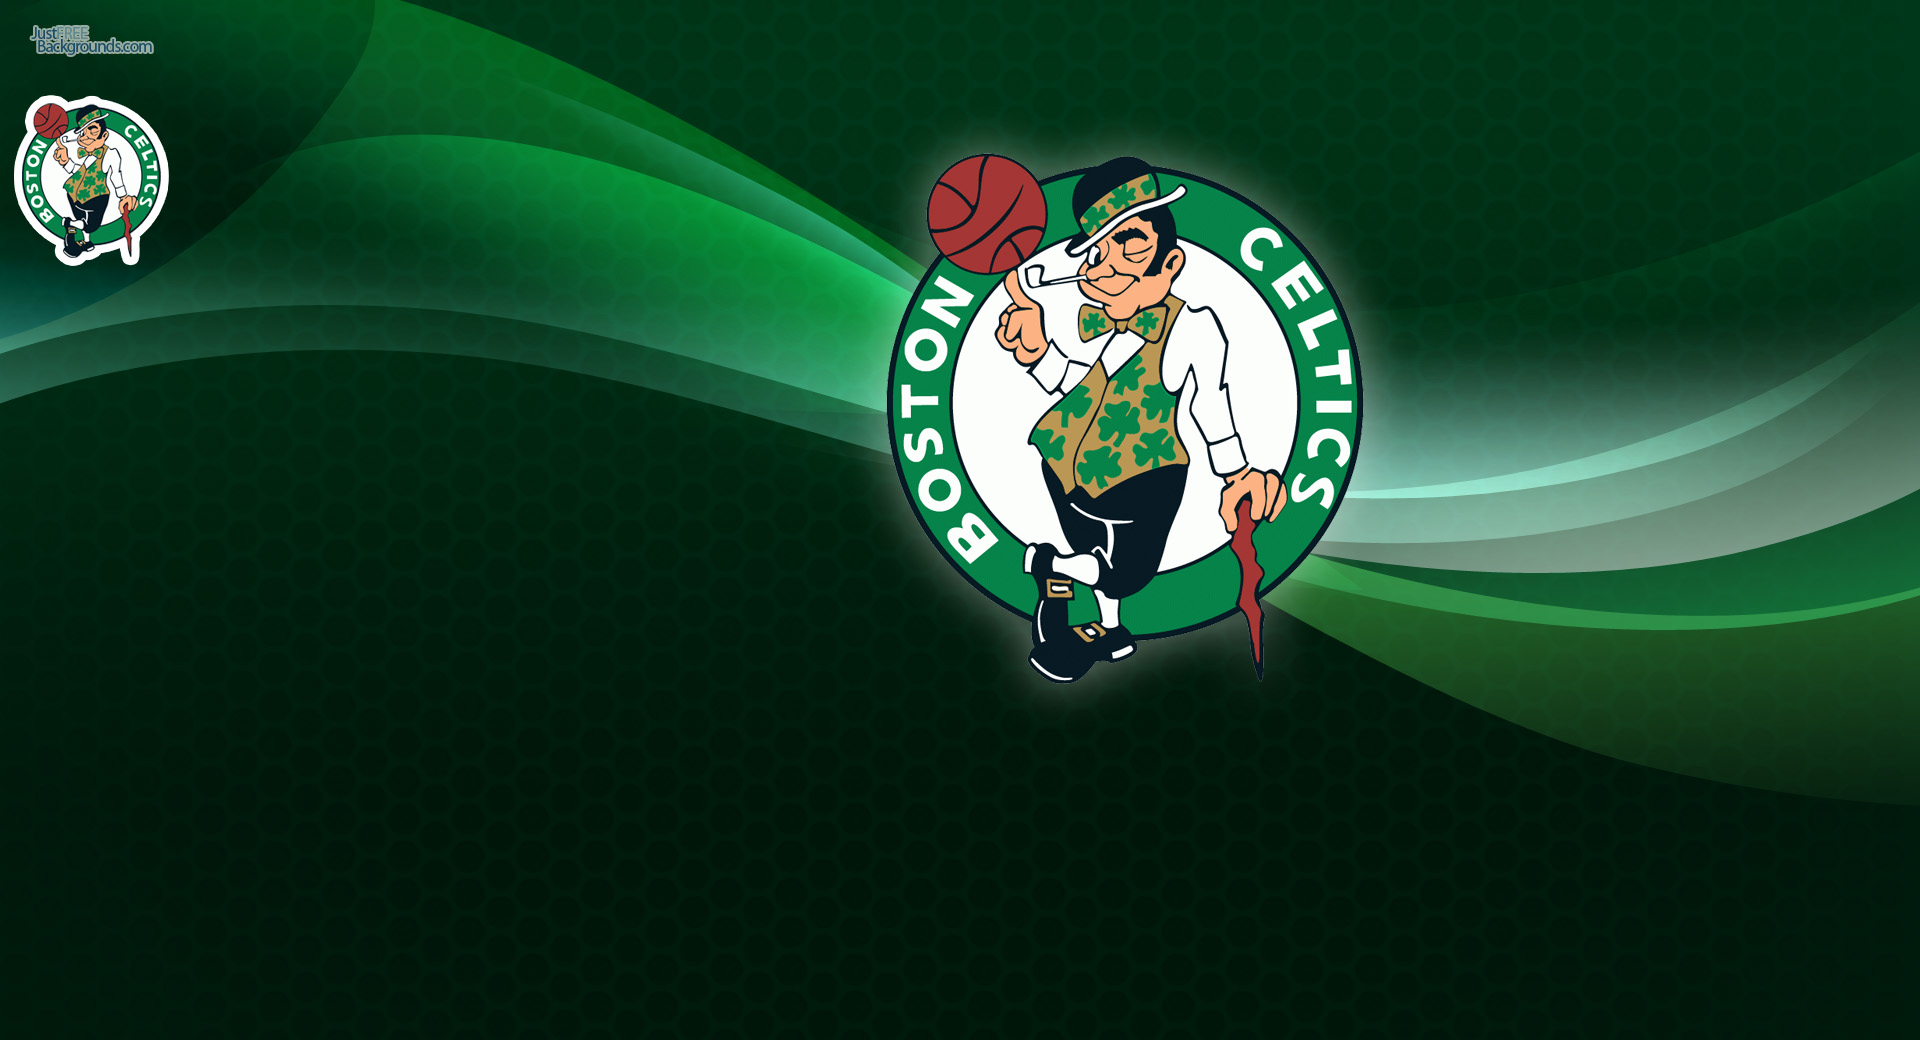 Para Celtics Wallpaper Fondos De Escritorio Boston